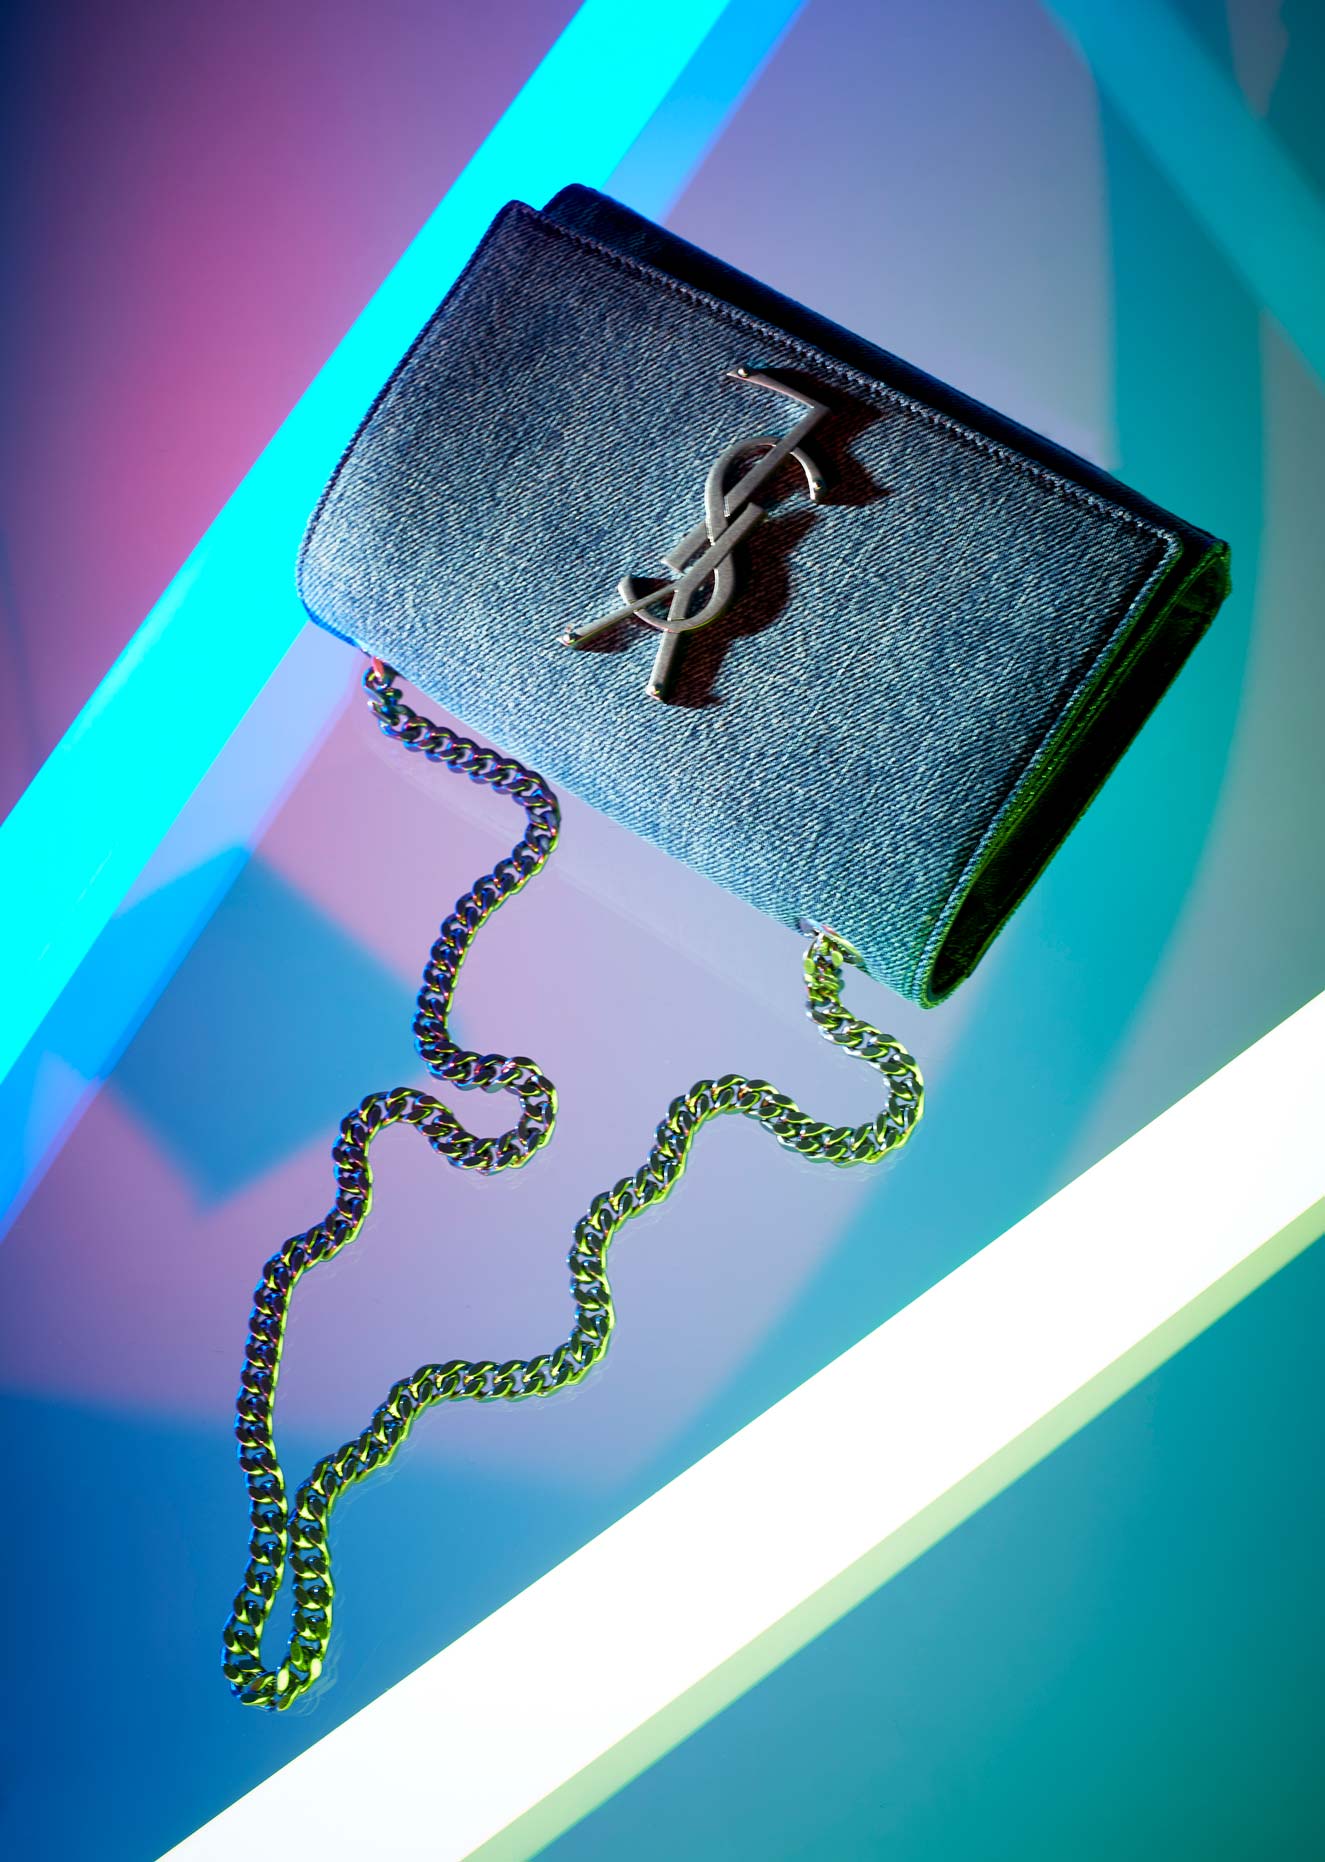 Yves Saint Laurent Tasche Produktfoto by Eveliene Klink